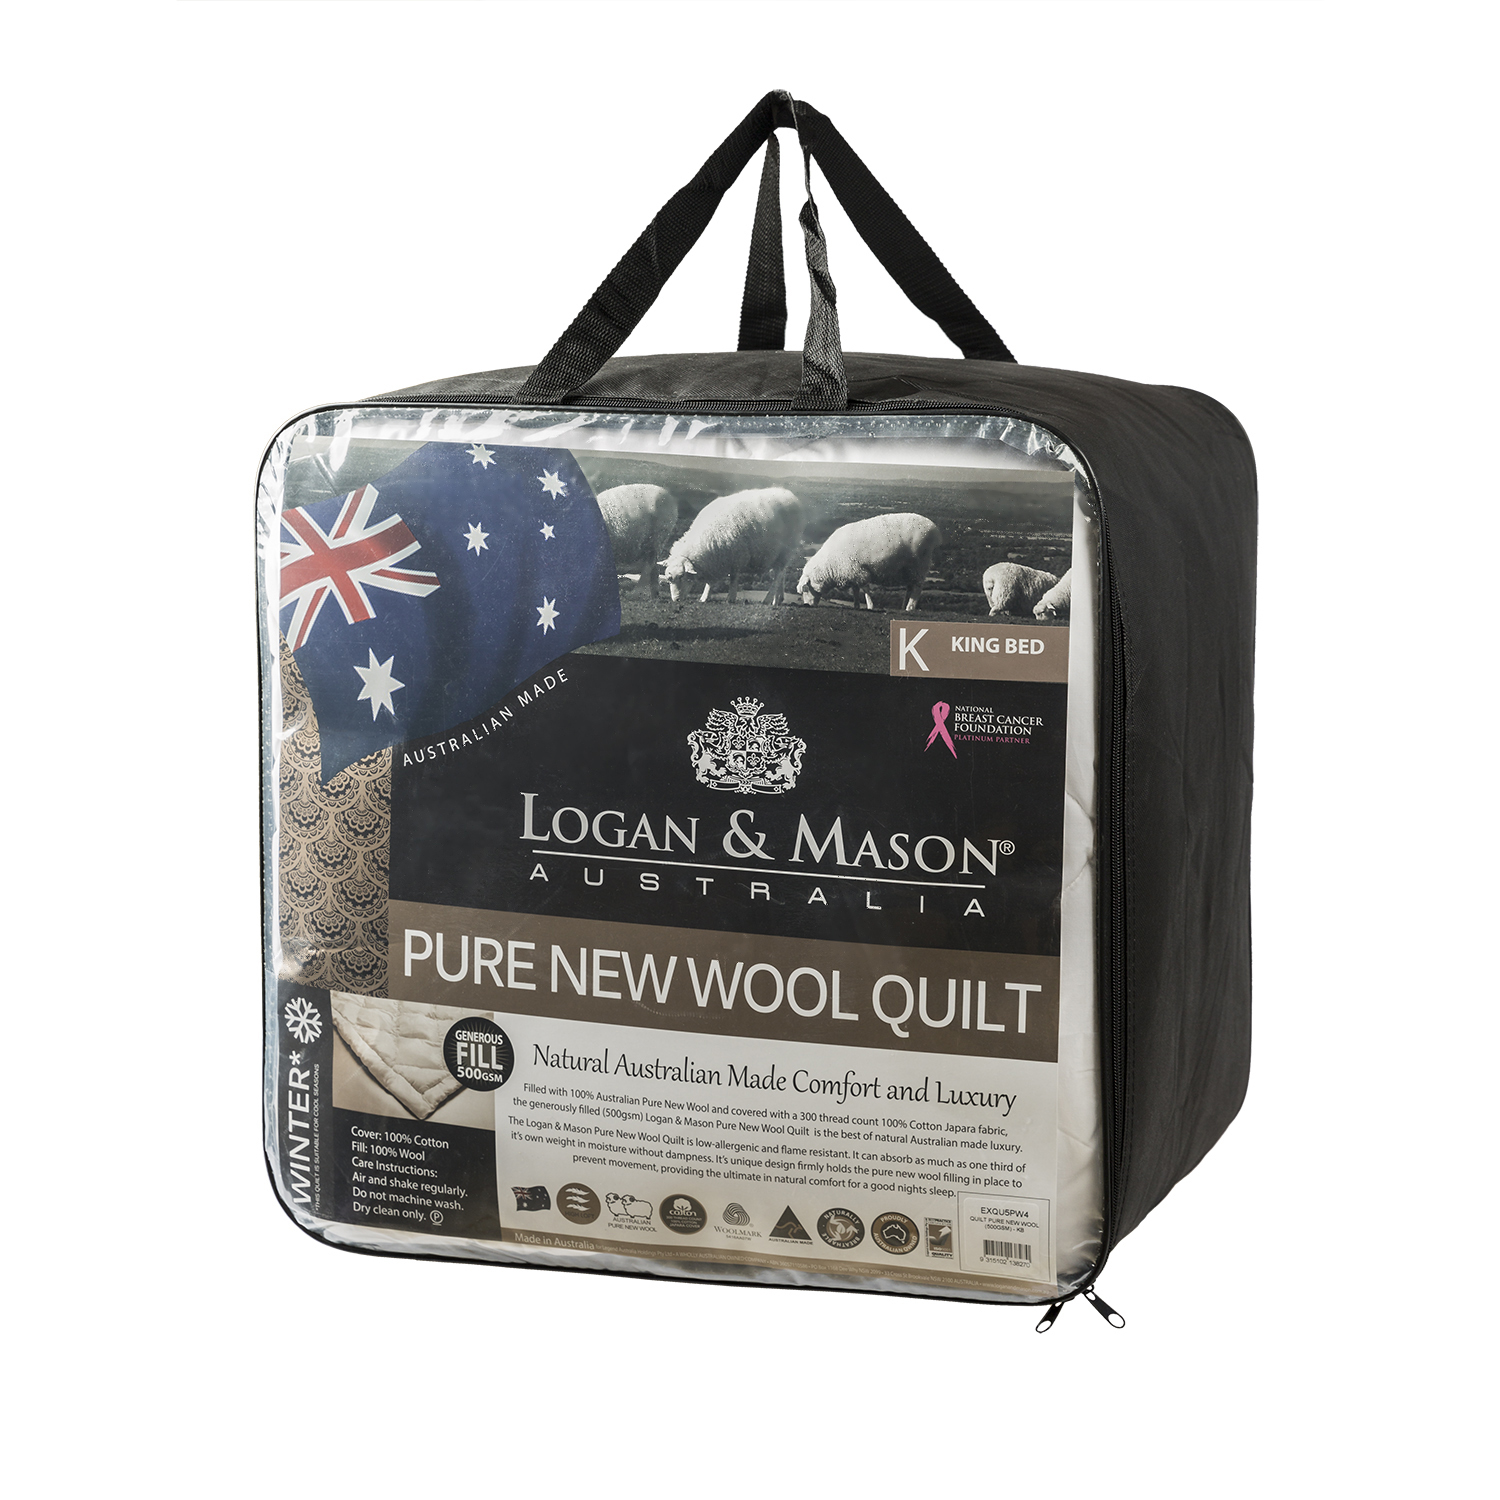 澳大利亚原产LOGAN & MASON纯羊毛冬被羊毛被子500gsm 白色 Double Bed双人：180cm x 210cm